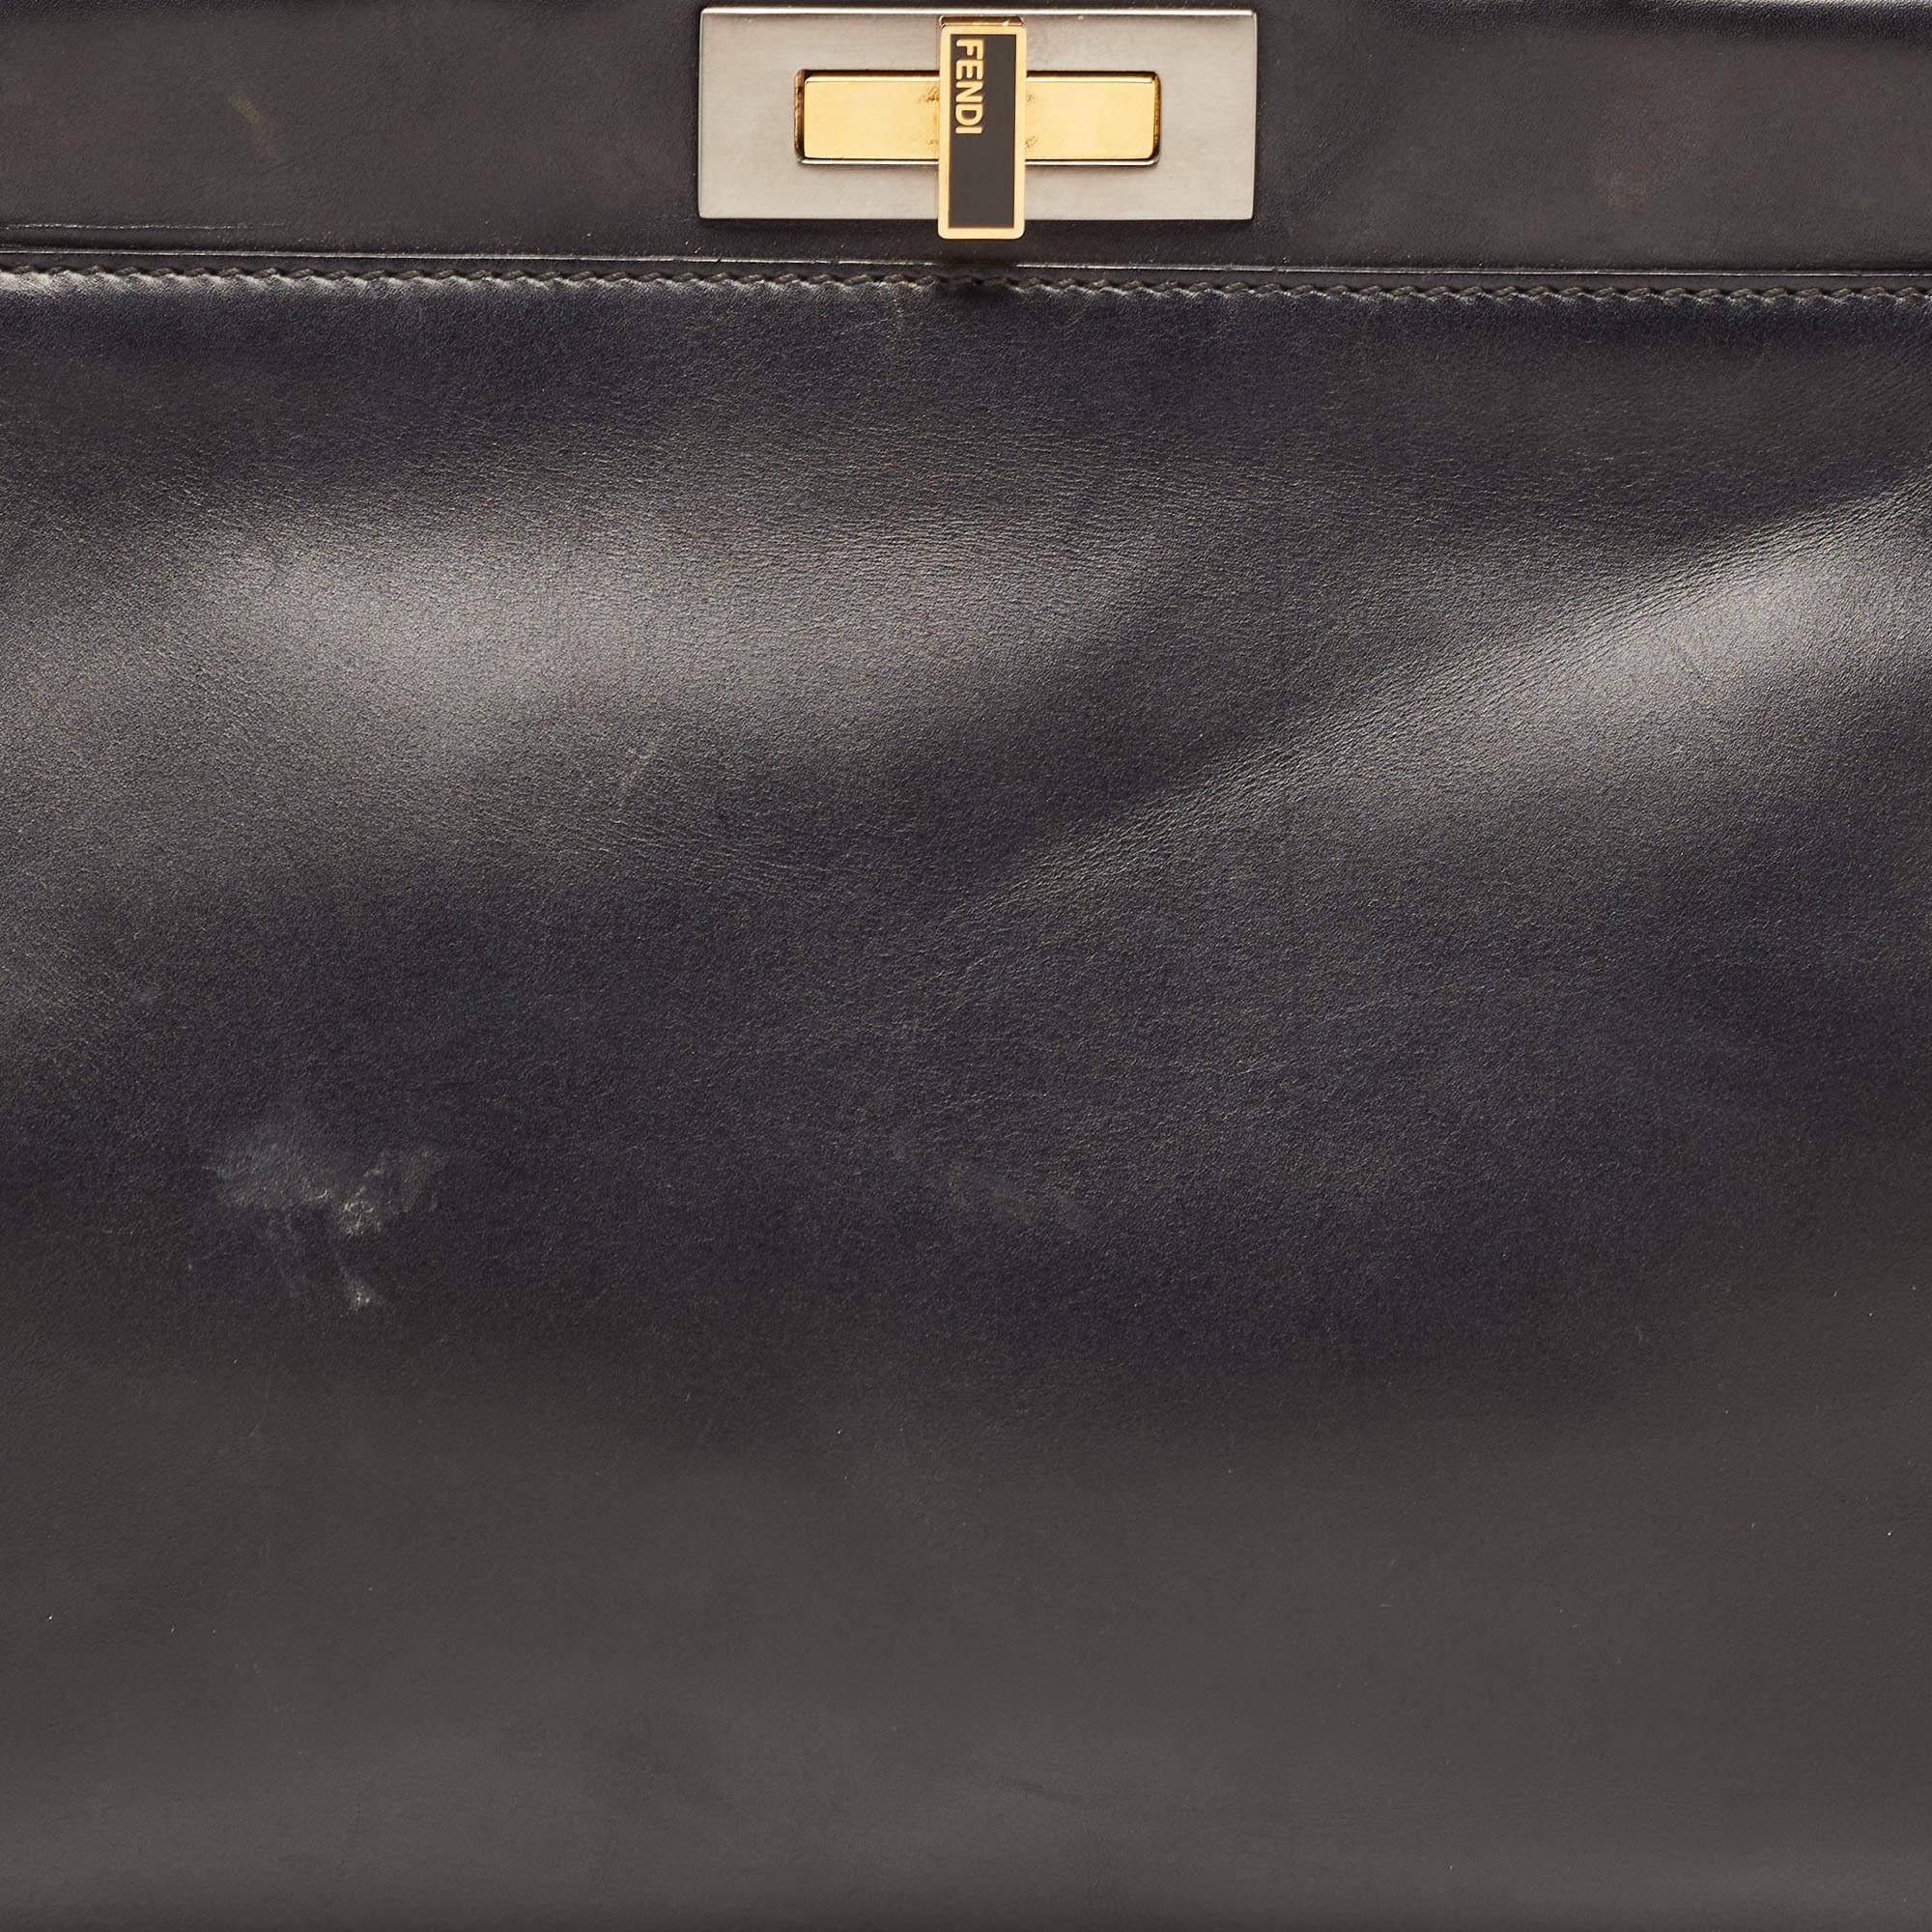 Fendi Black Leather Medium Peekaboo Top Handle Bag 5